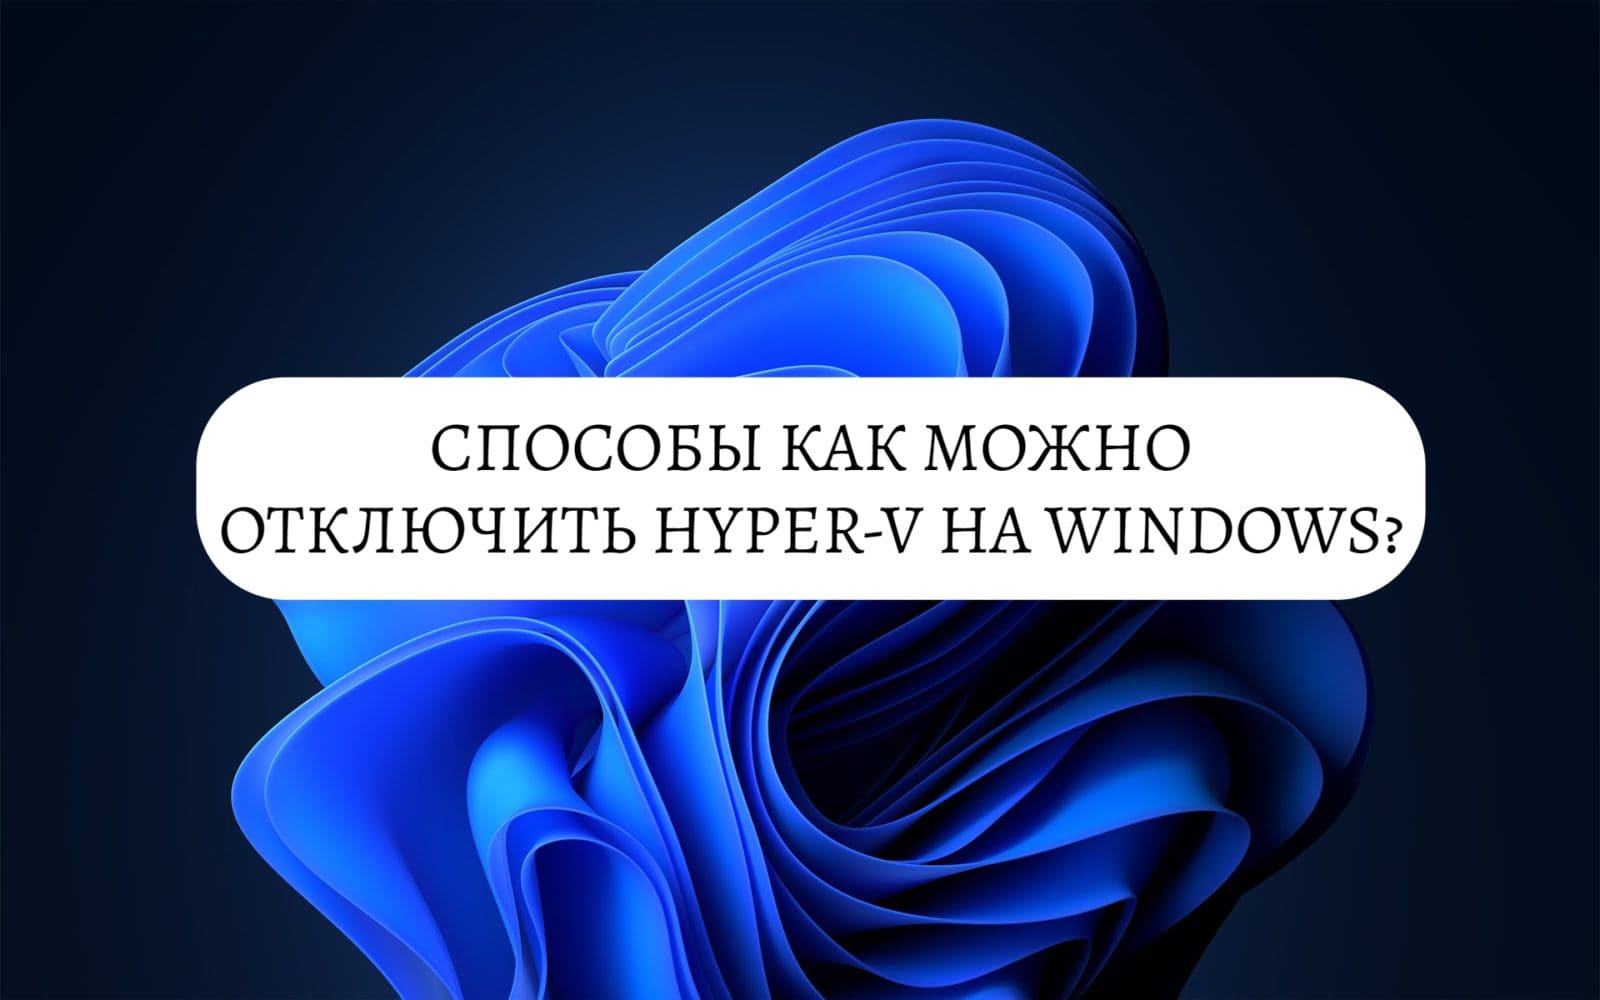 Способы отключить Hyper-V на Windows?